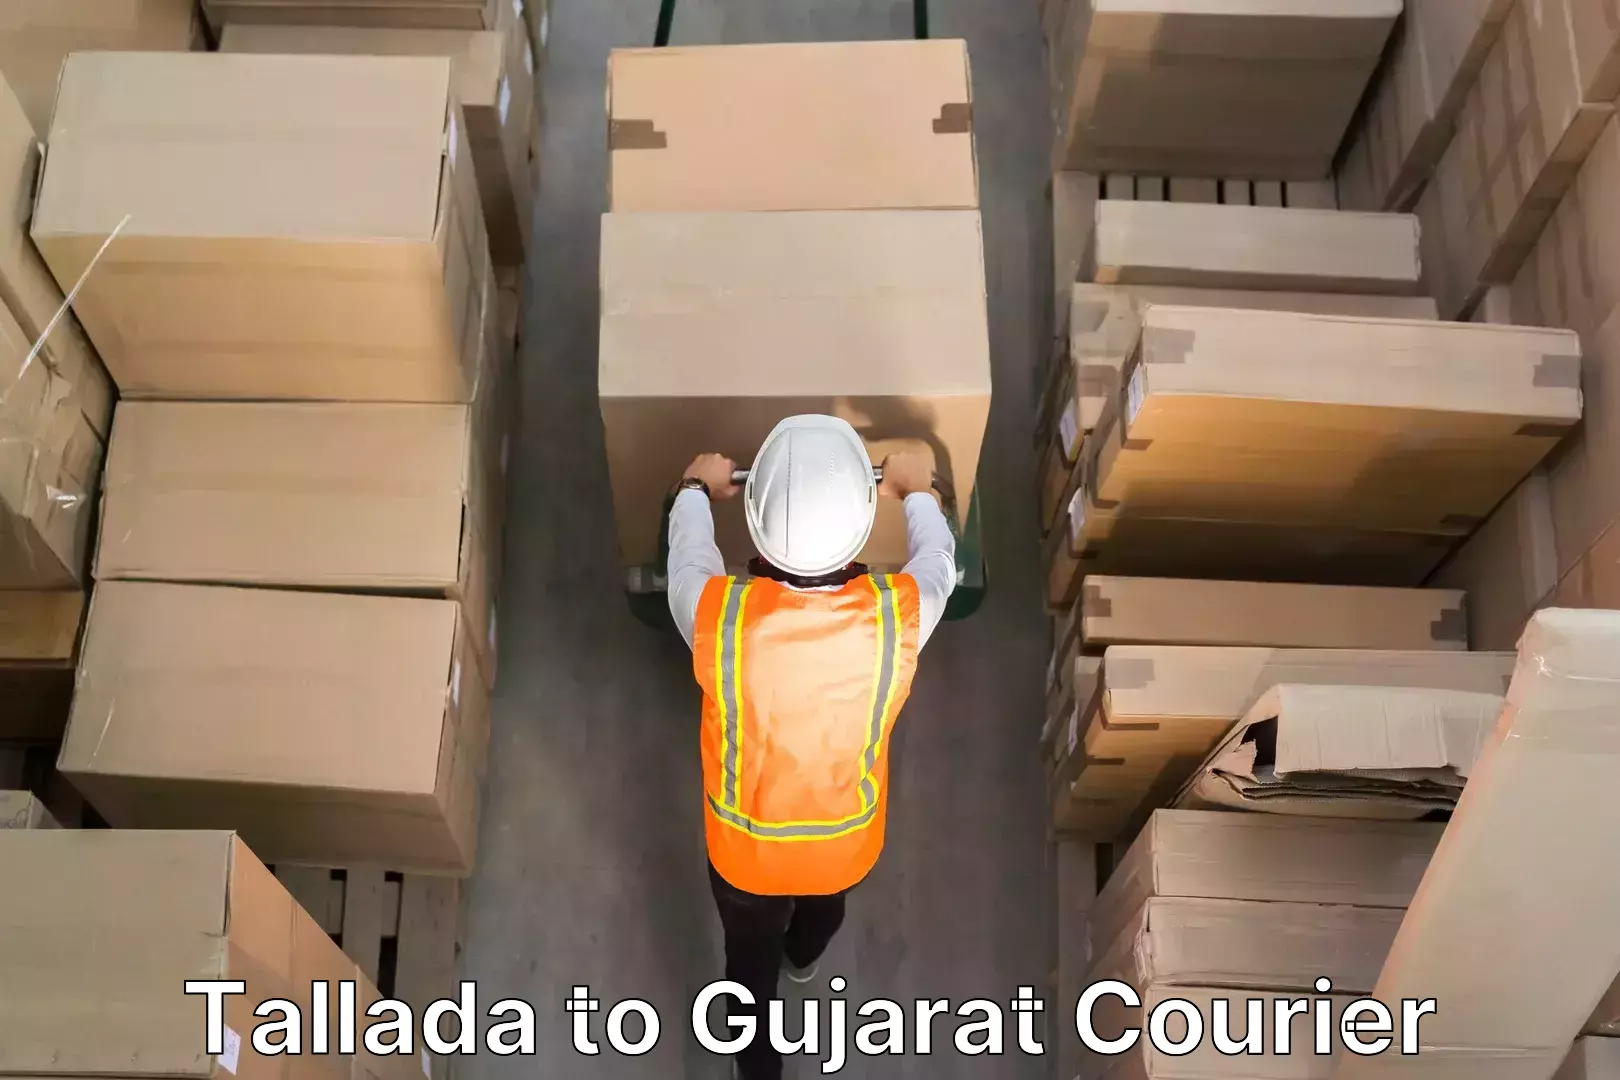 Furniture transport professionals Tallada to Gujarat